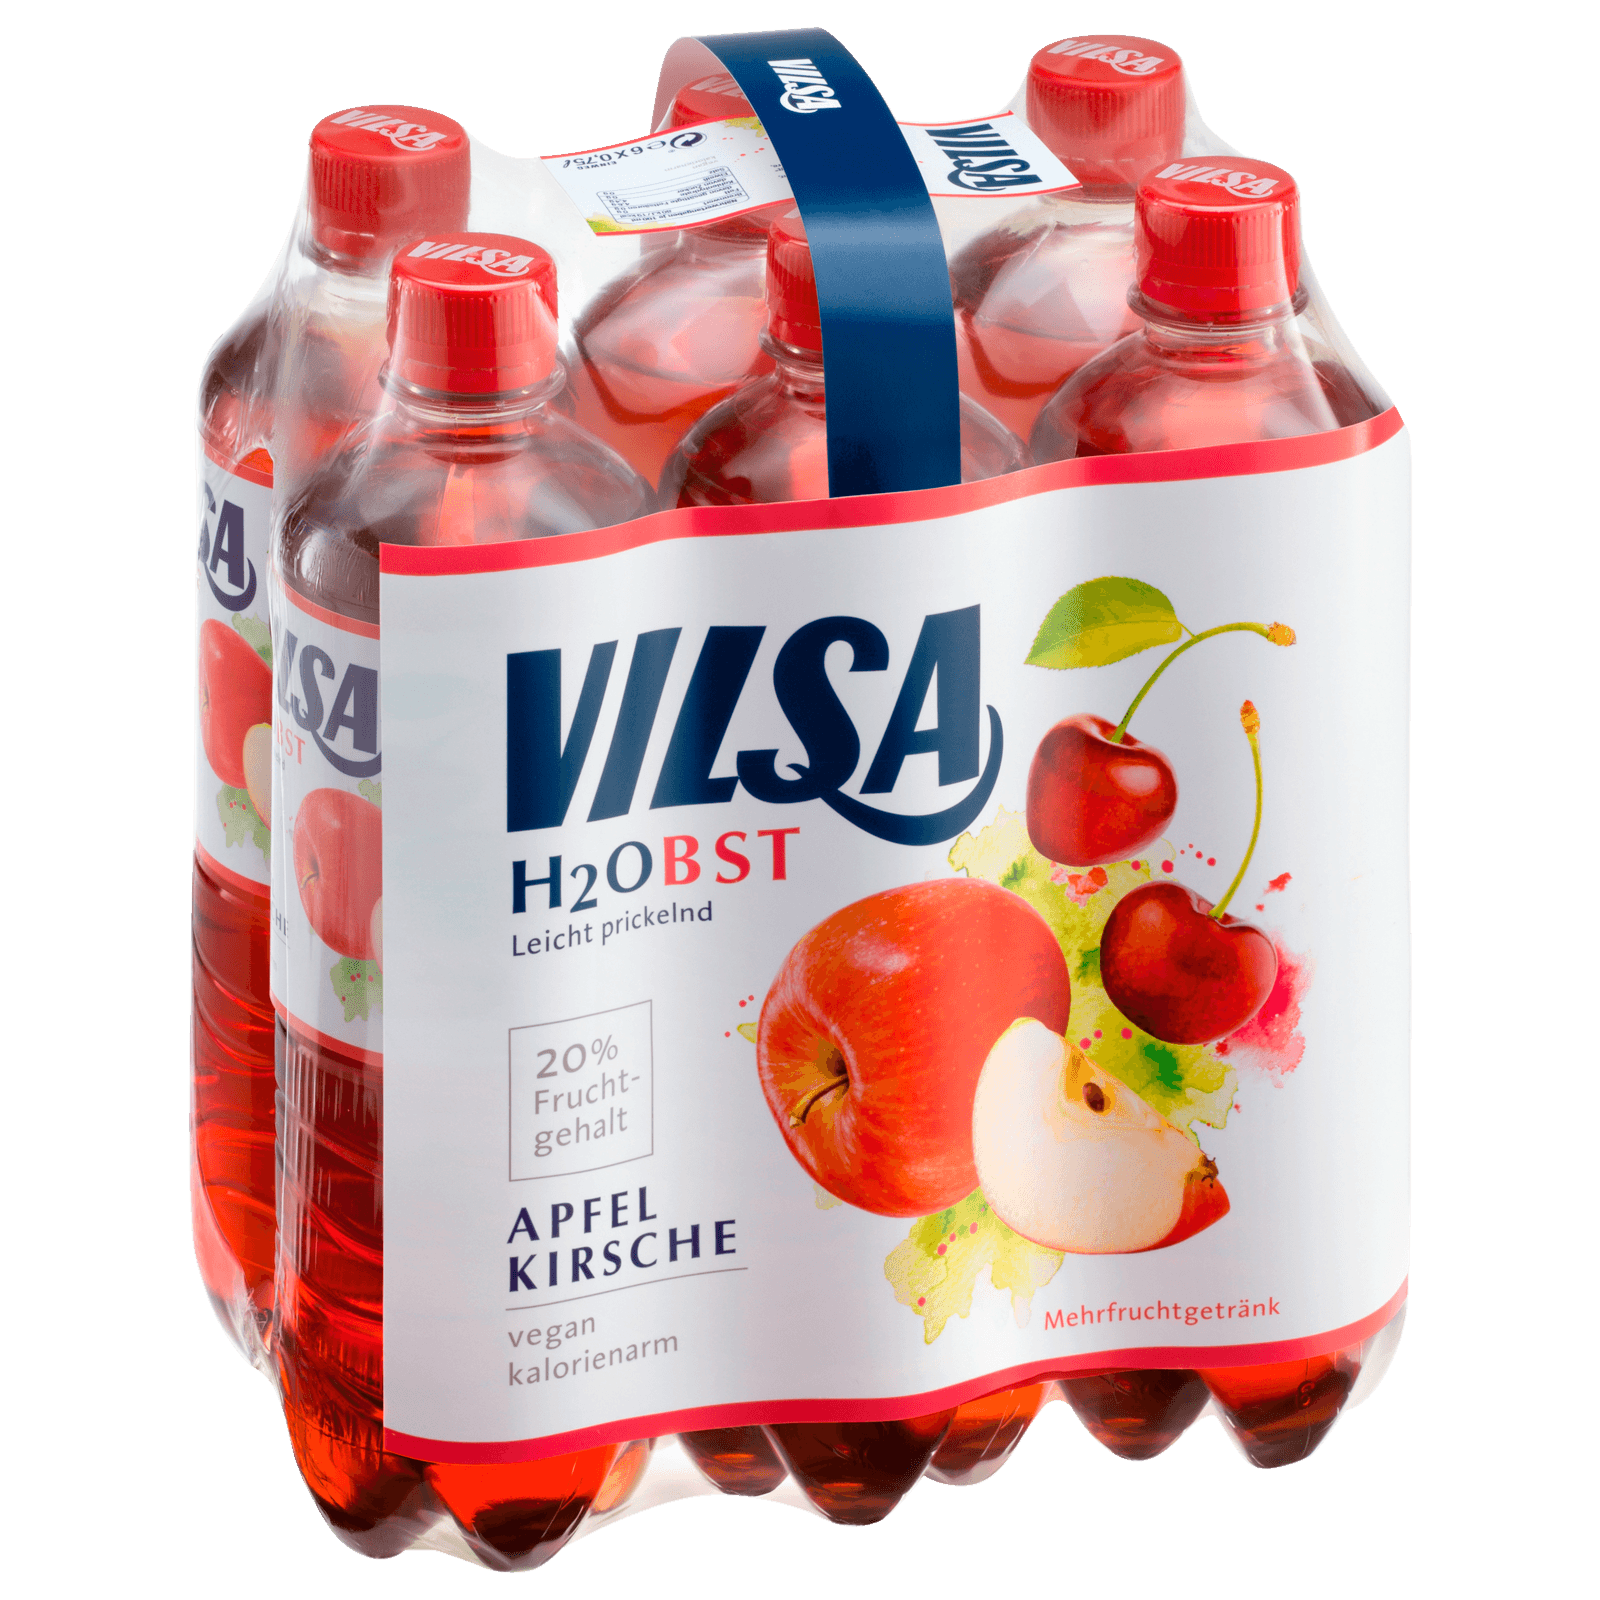 Vilsa H2Obst Apfel/Kirsche 6x0,75l  für 5.34 EUR